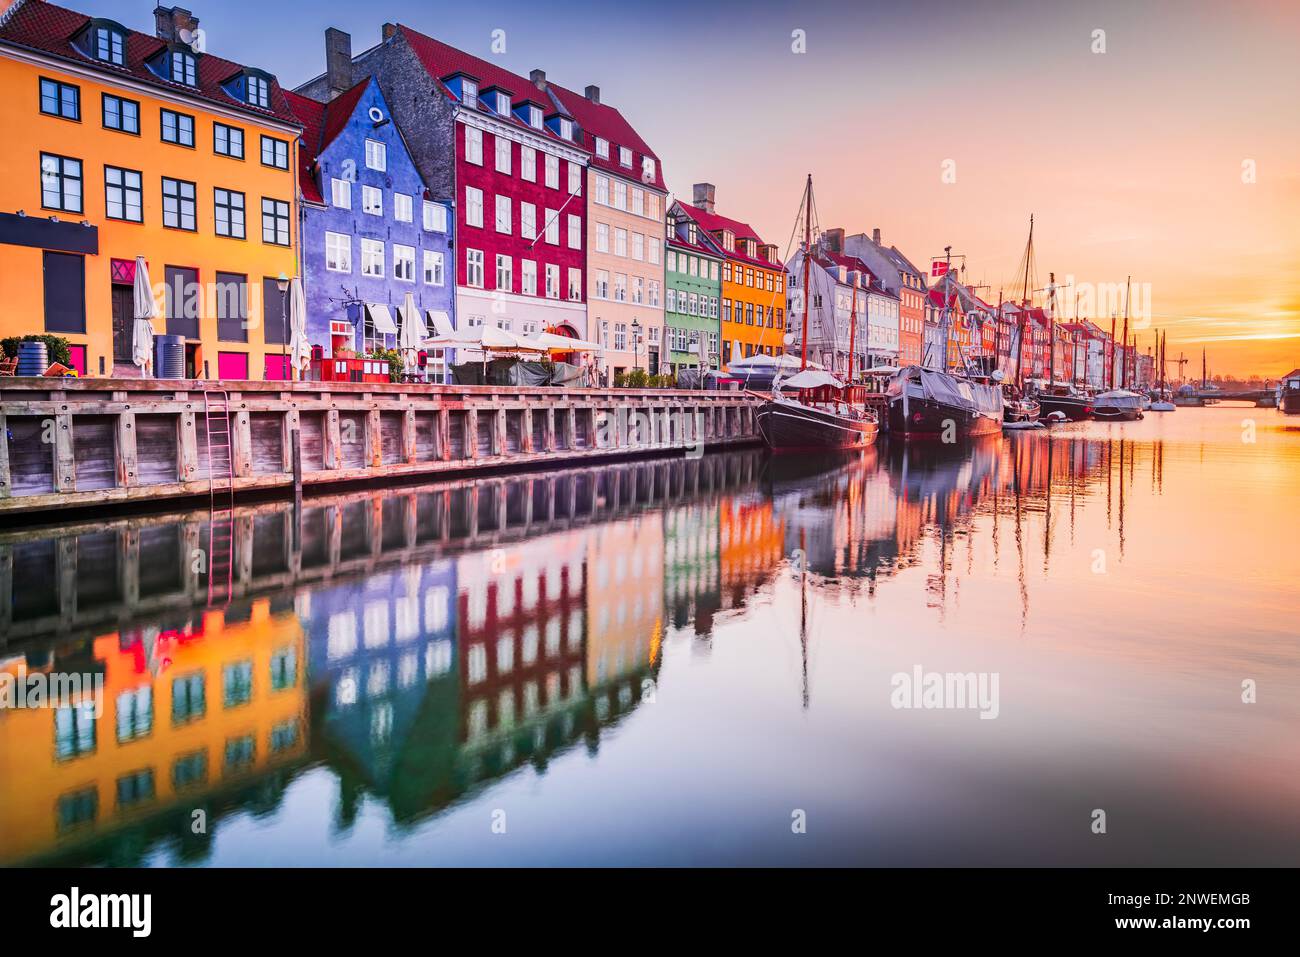 Copenhague, Dinamarca. Encanto del Canal Nyhavn, lugar icónico, colorido amanecer y reflejos de agua impresionantes. Foto de stock